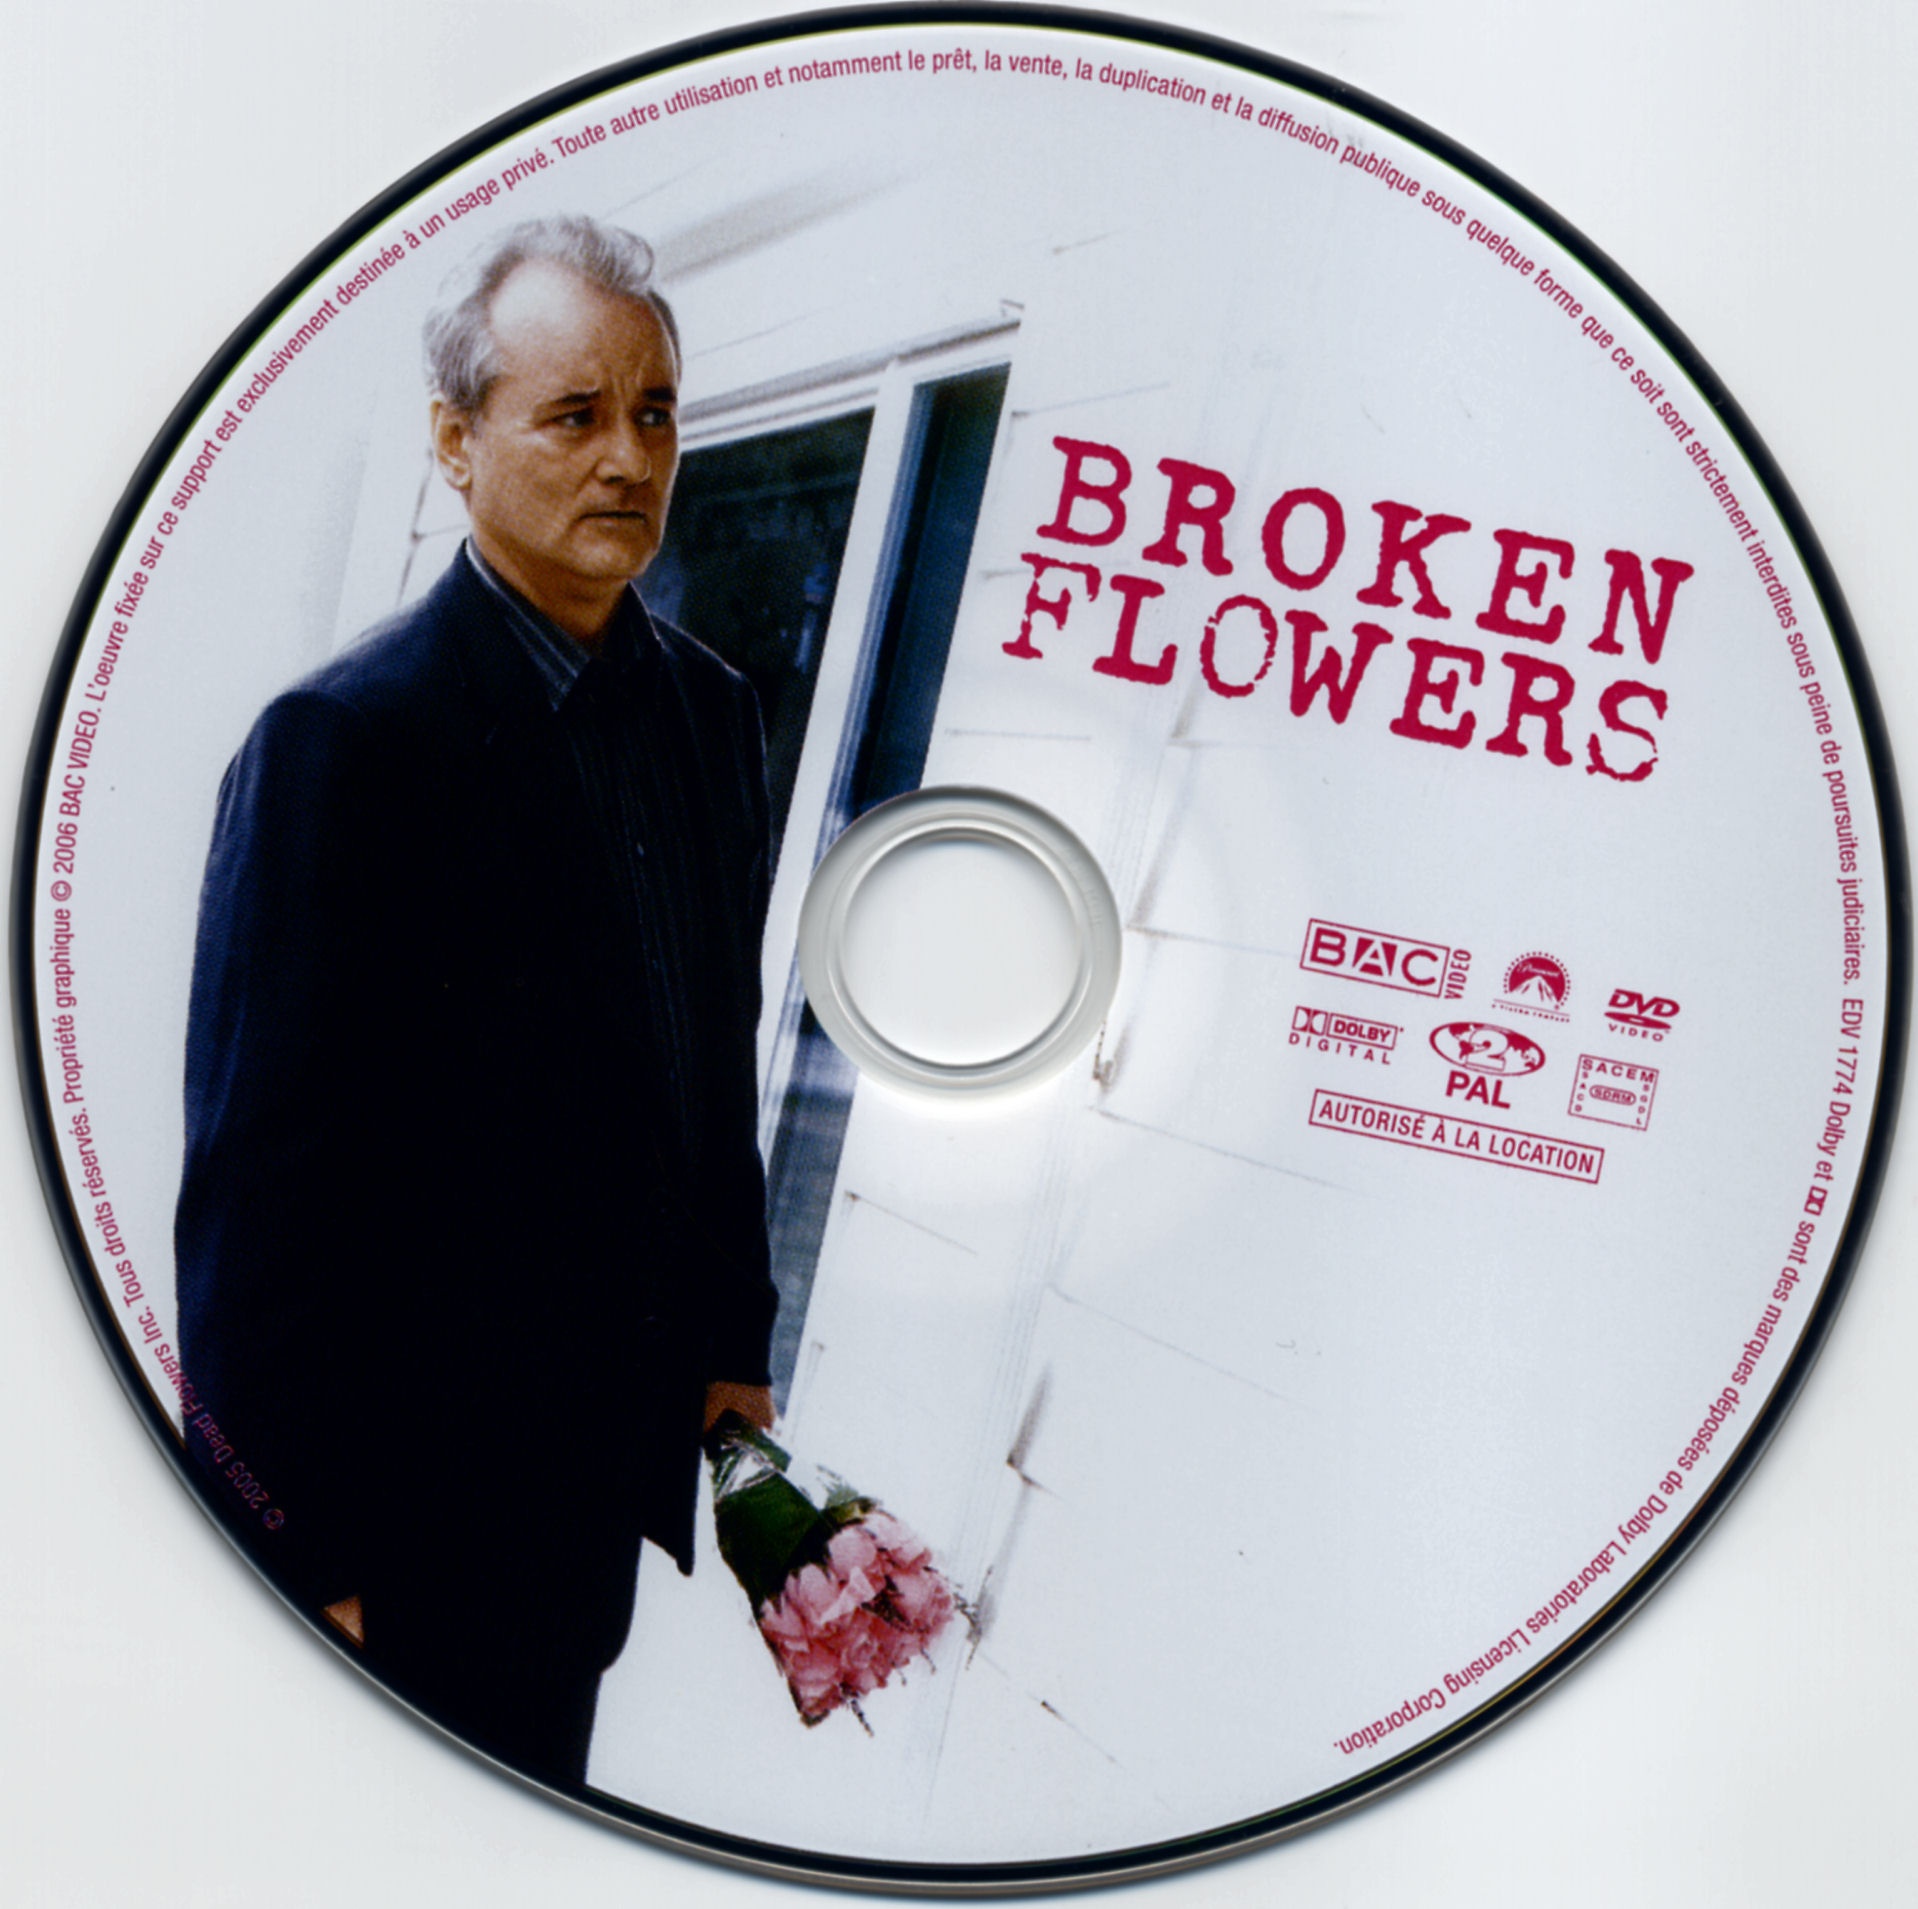 Broken flowers